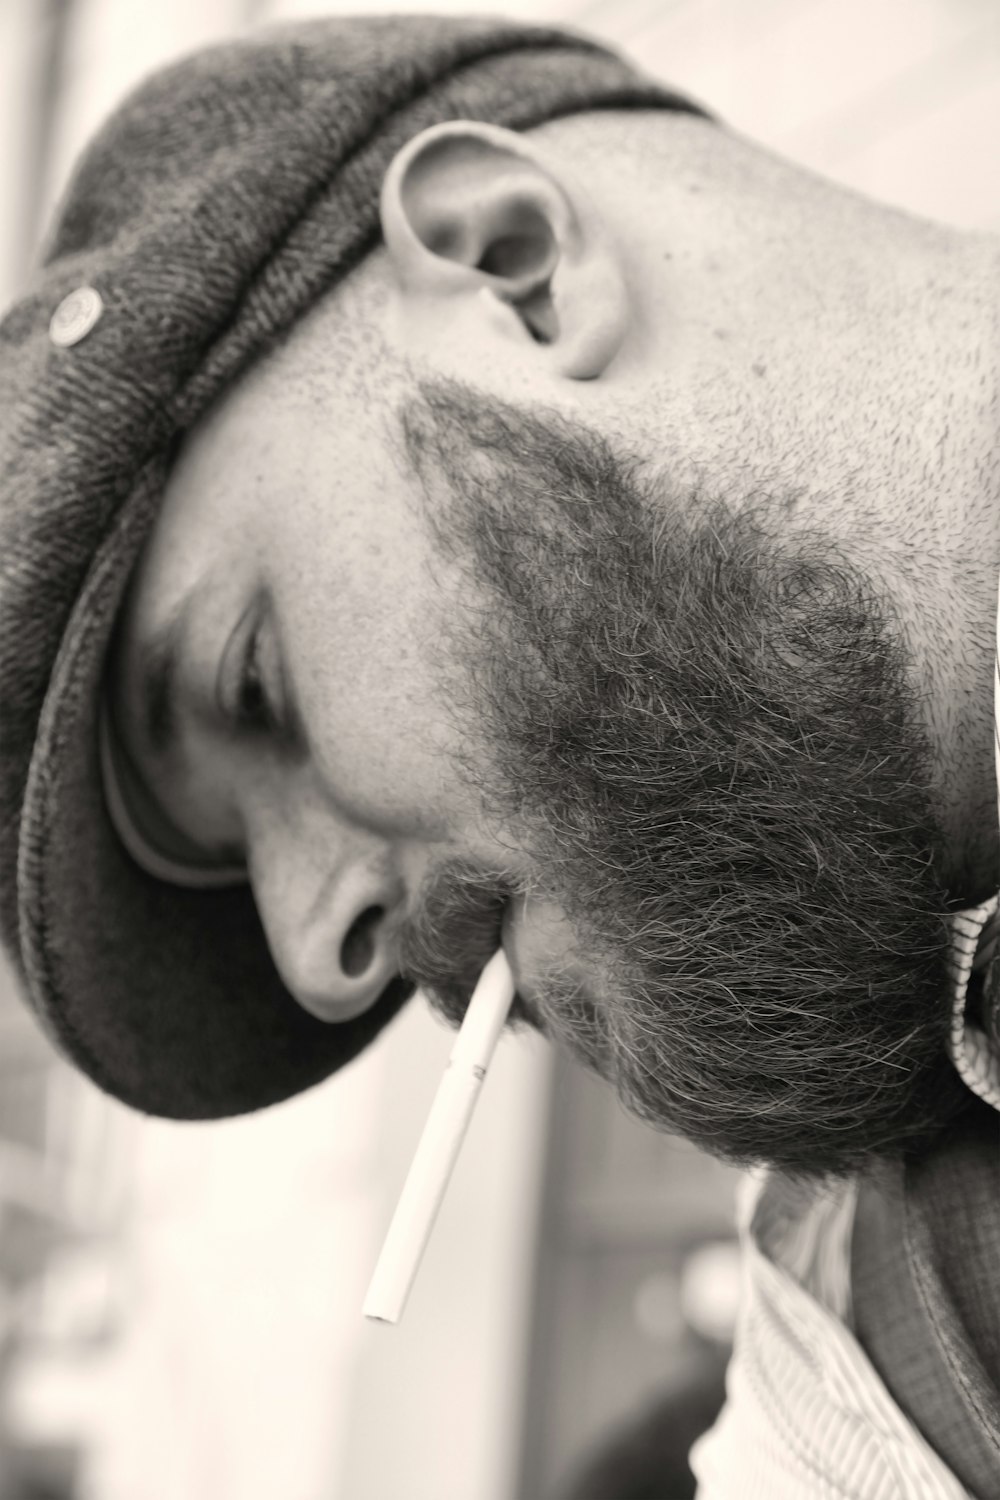 man with black beard smoking cigarette